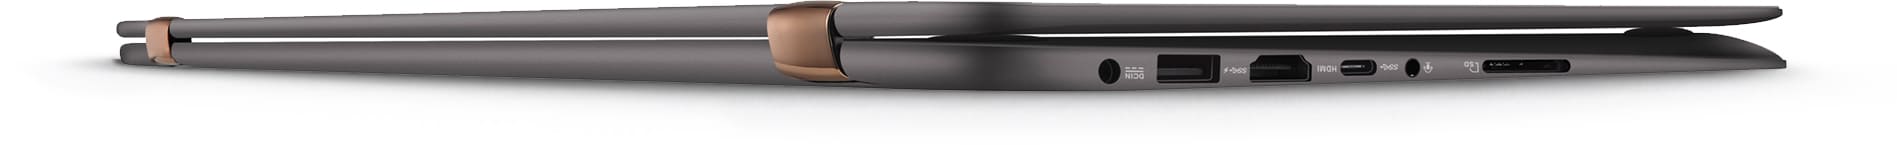 Asus UX360UA DQ019T – Dòng laptop cao cấp, màn hình cảm ứng 360 độ